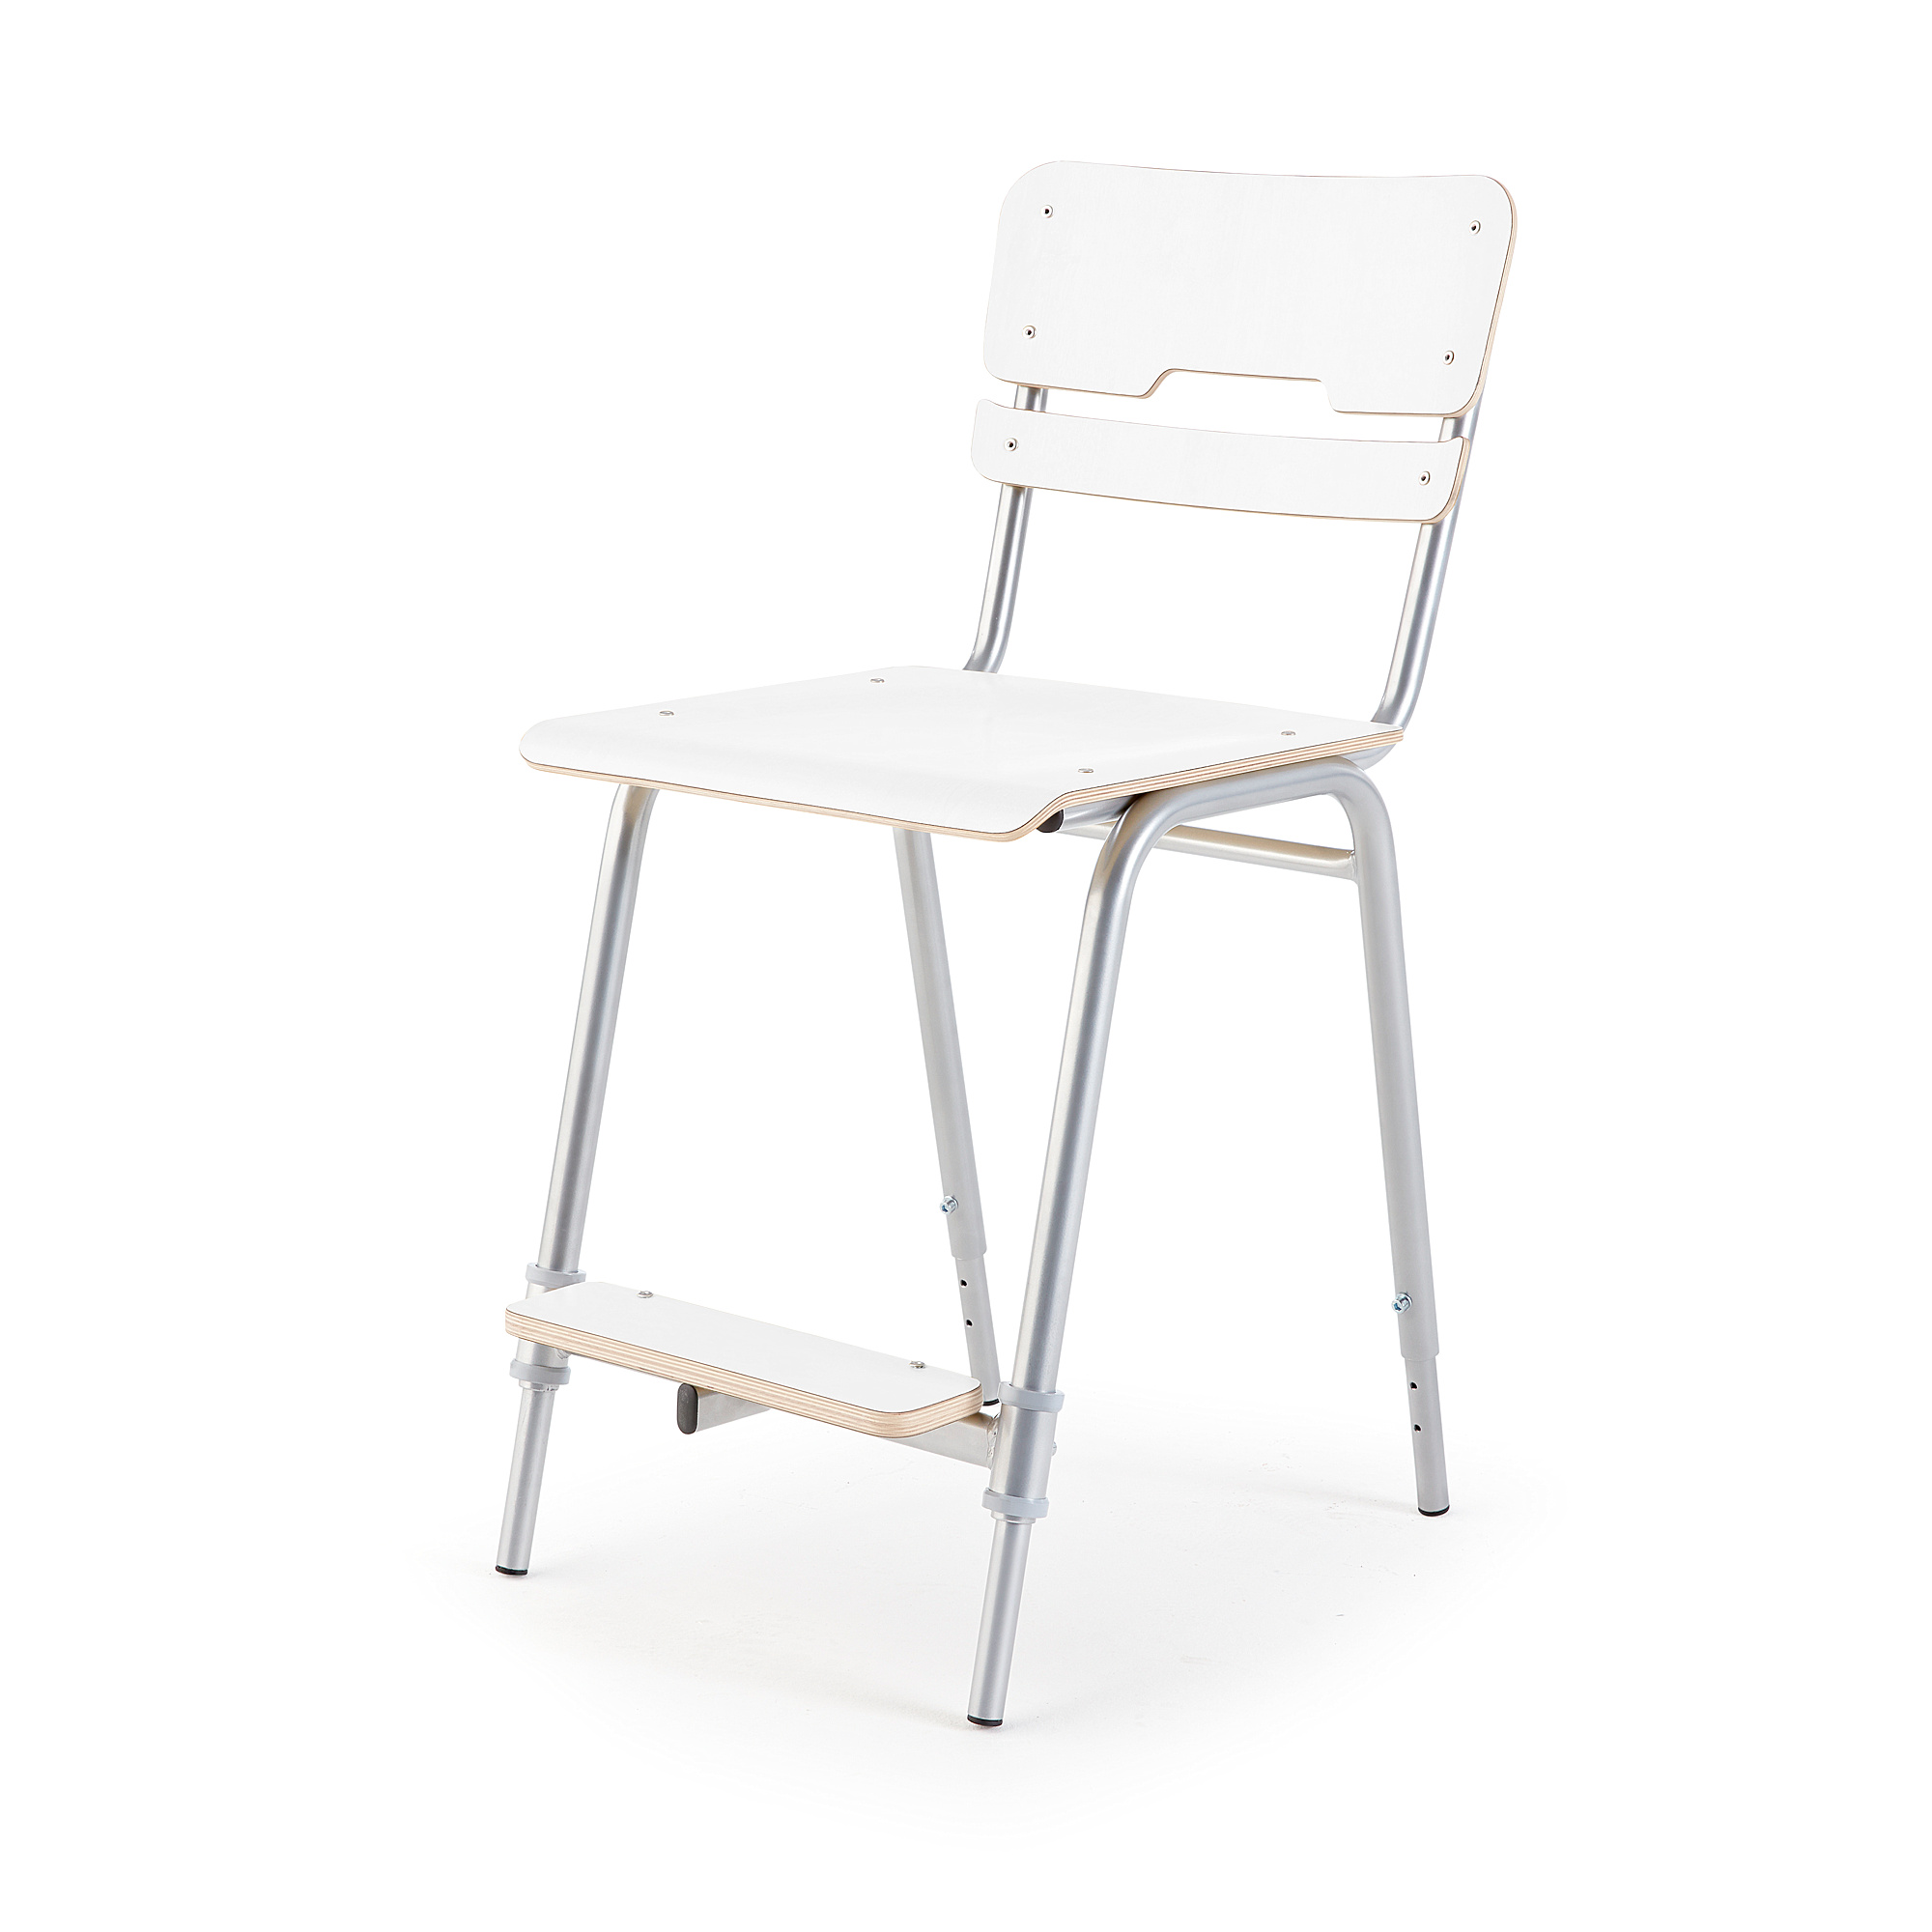 Školní židle EGO, výška 460 - 600 mm, bílá